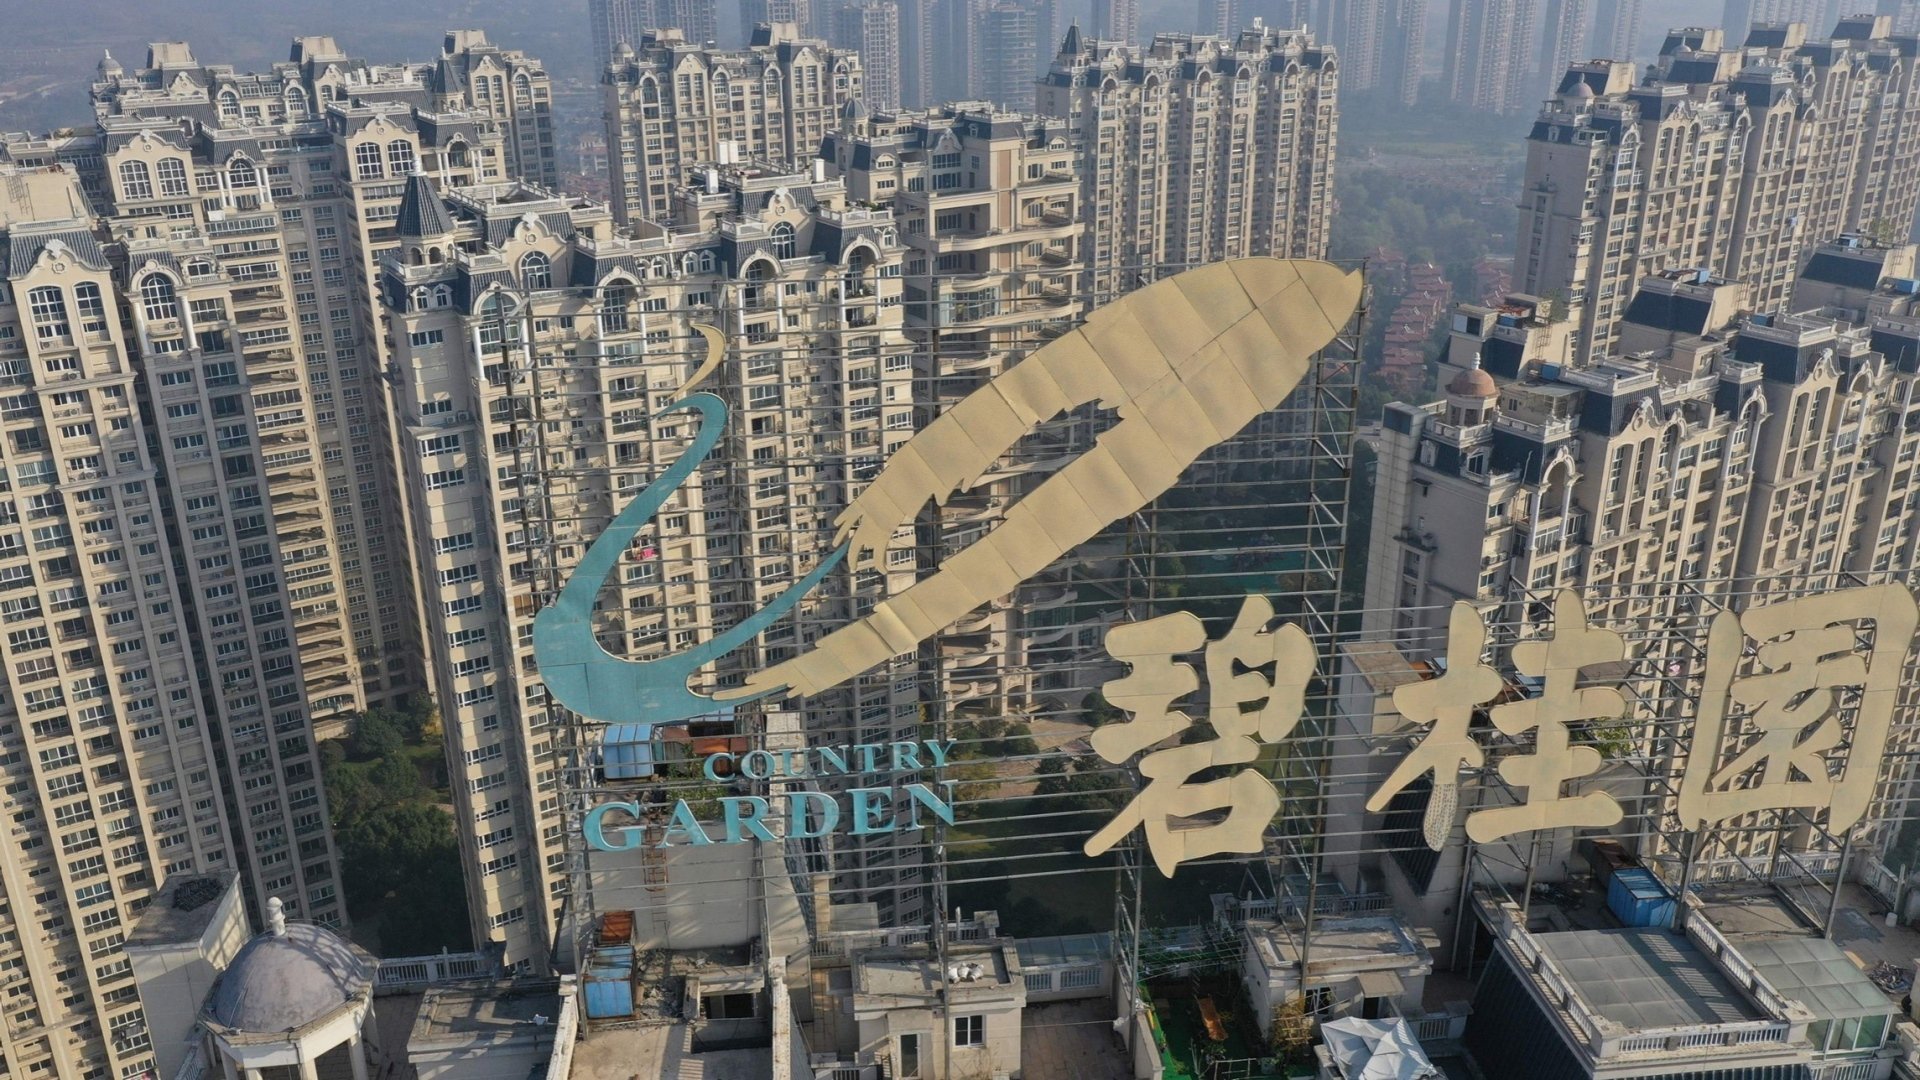 Sau 'bom nợ' bất động sản Evergrande: Chuyện gì xảy ra với kinh tế Trung Quốc? - Ảnh 3.